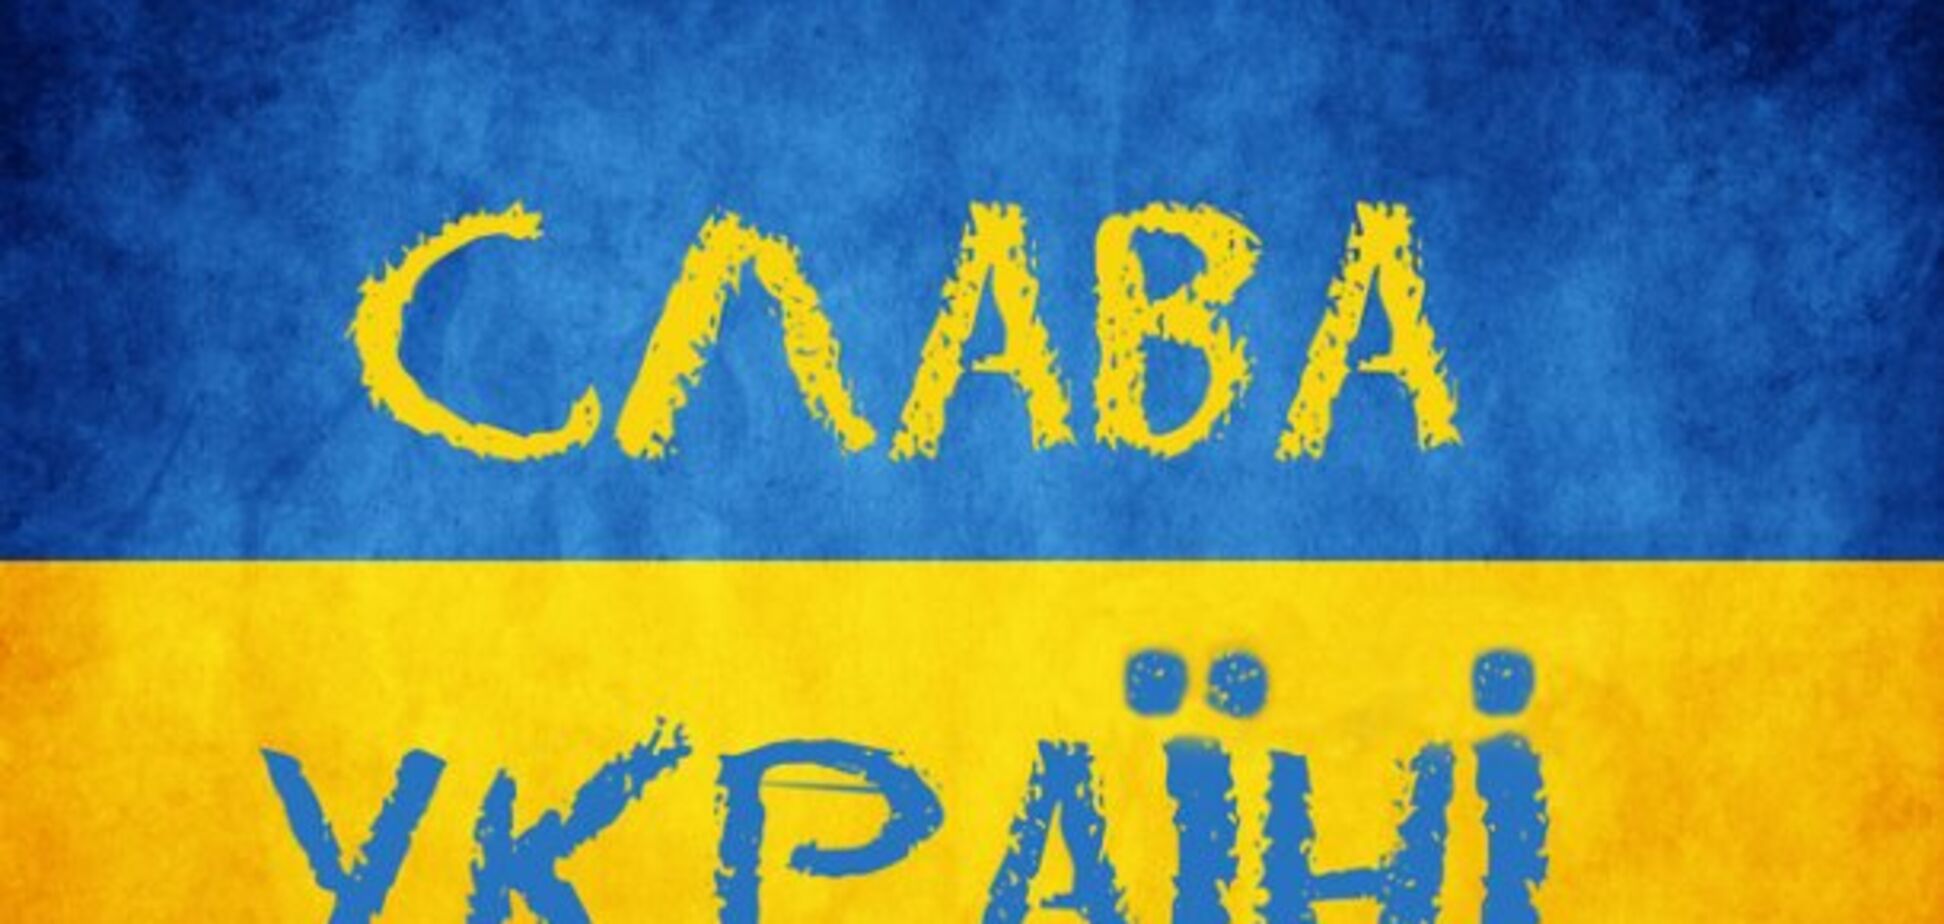 'Слава Україні!' - звідки походить знаменитий вигук